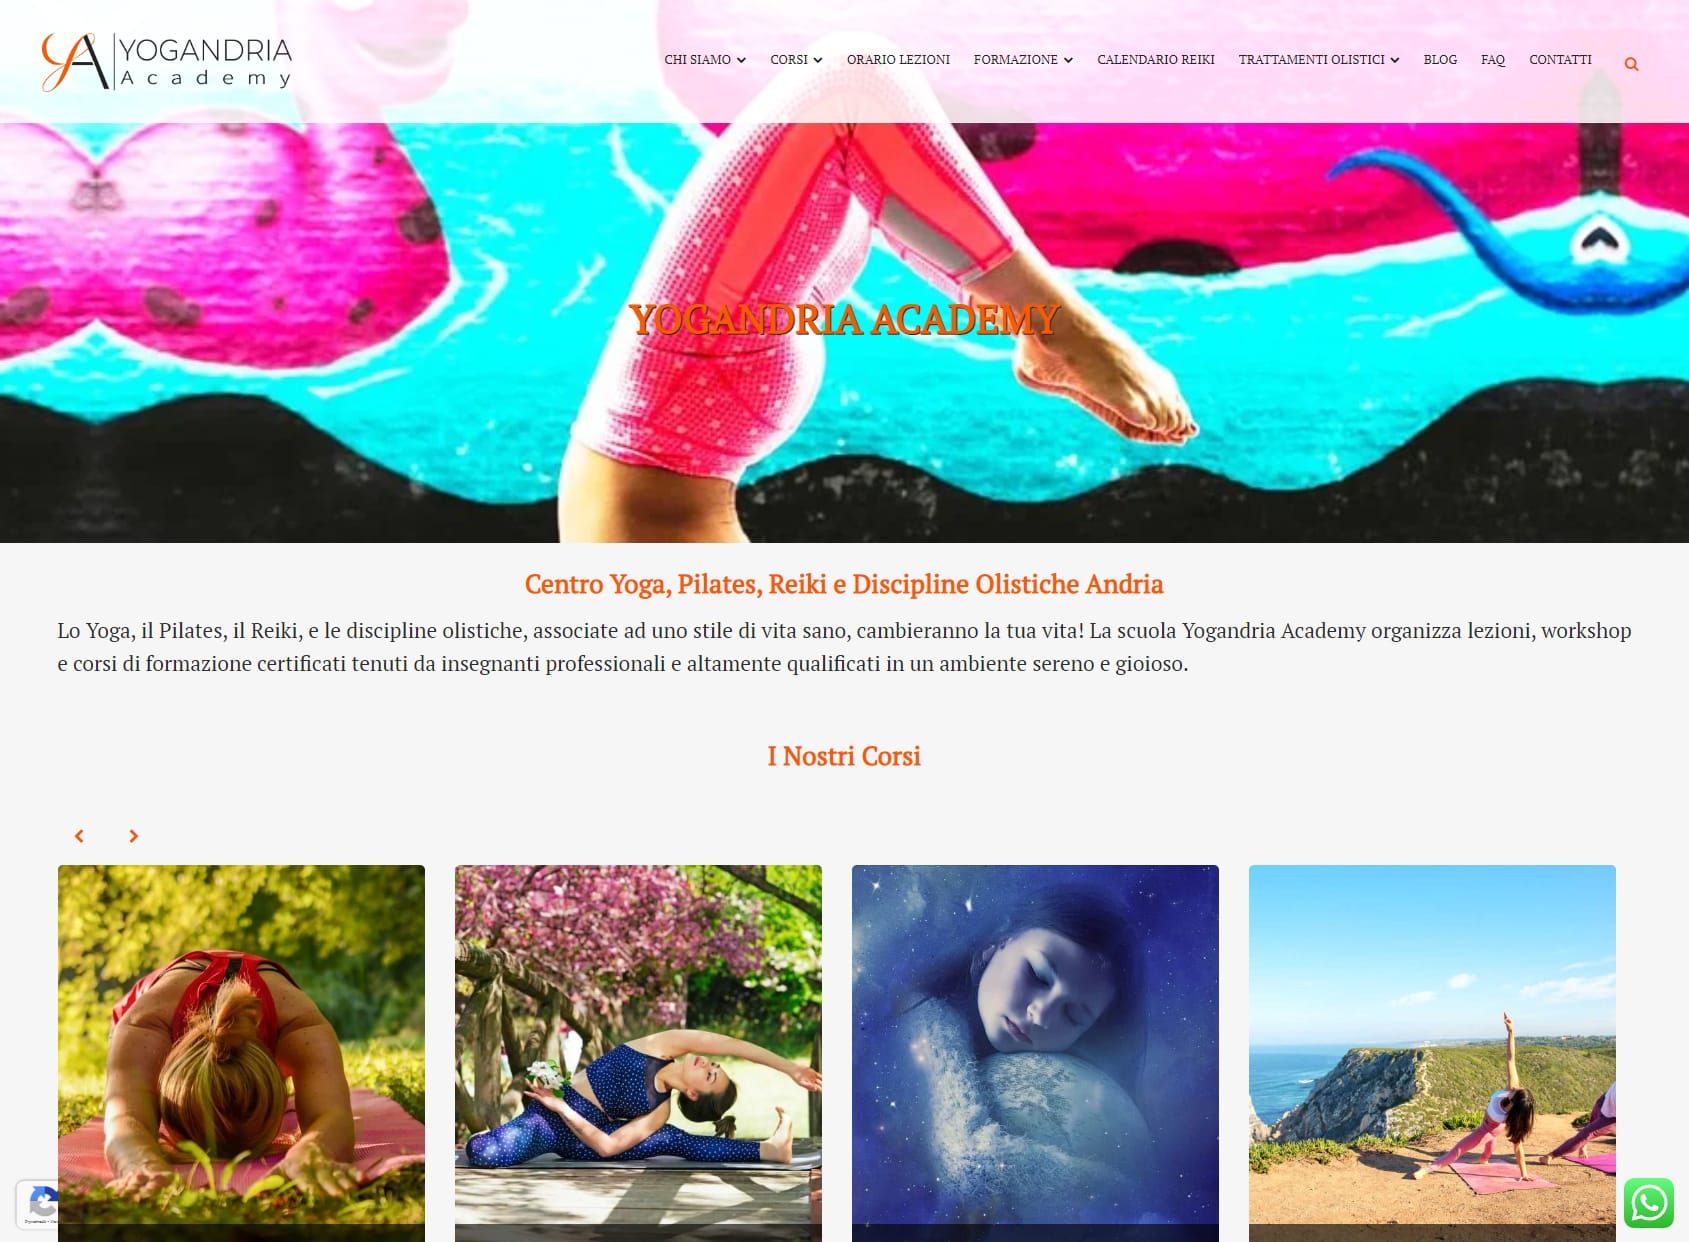 Yogandria Academy - Centro Yoga, Pilates e Reiki Andria